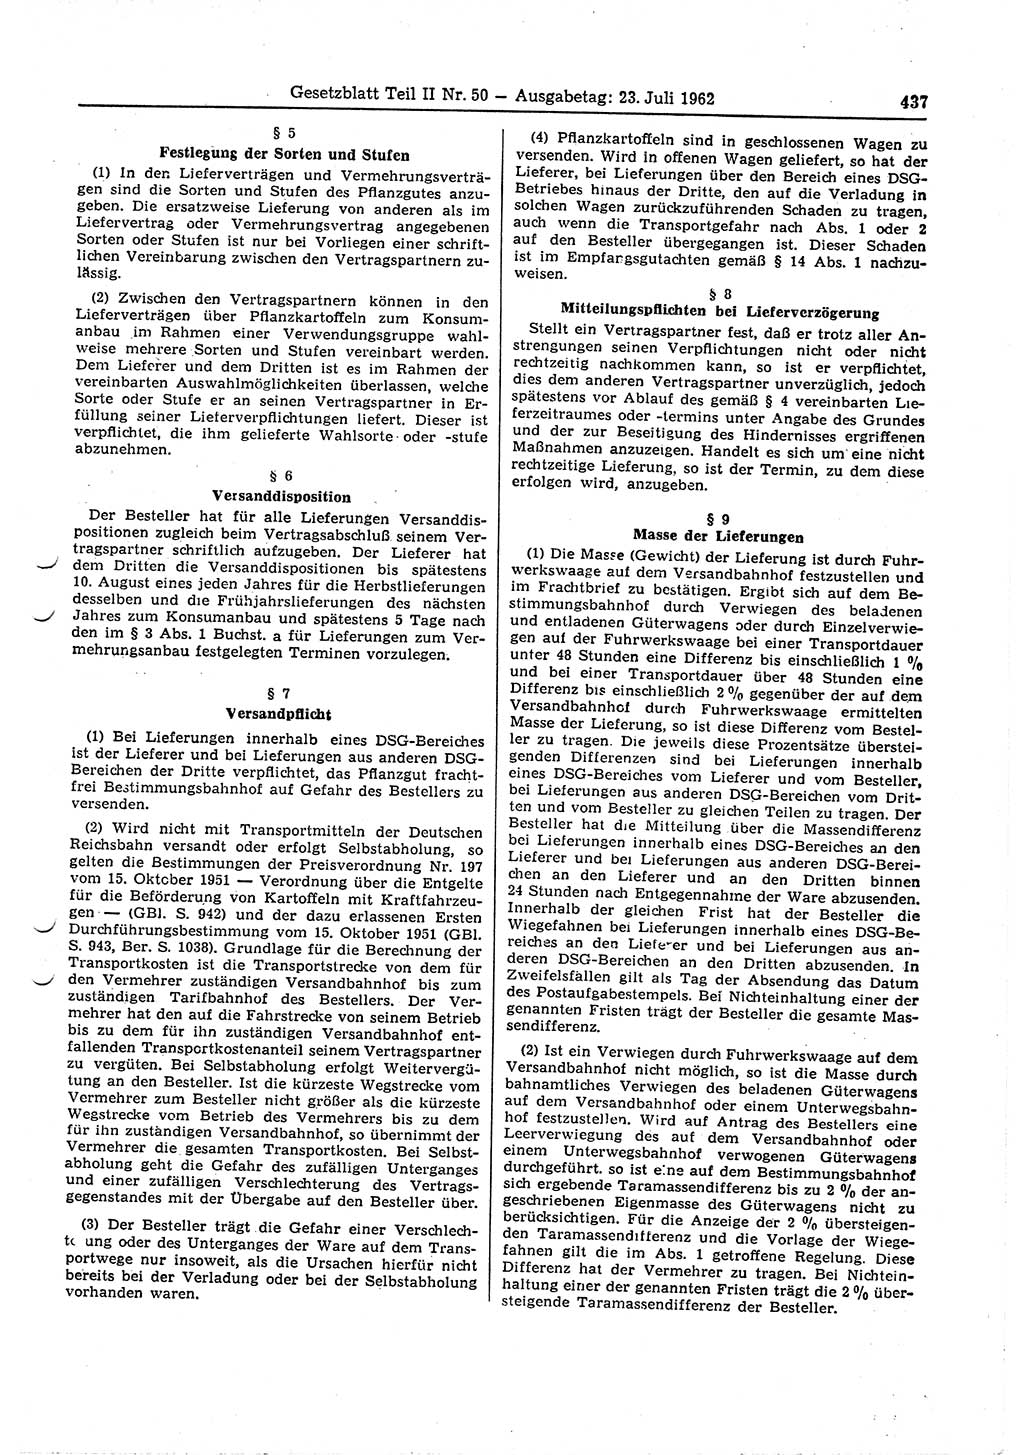 Gesetzblatt (GBl.) der Deutschen Demokratischen Republik (DDR) Teil ⅠⅠ 1962, Seite 437 (GBl. DDR ⅠⅠ 1962, S. 437)